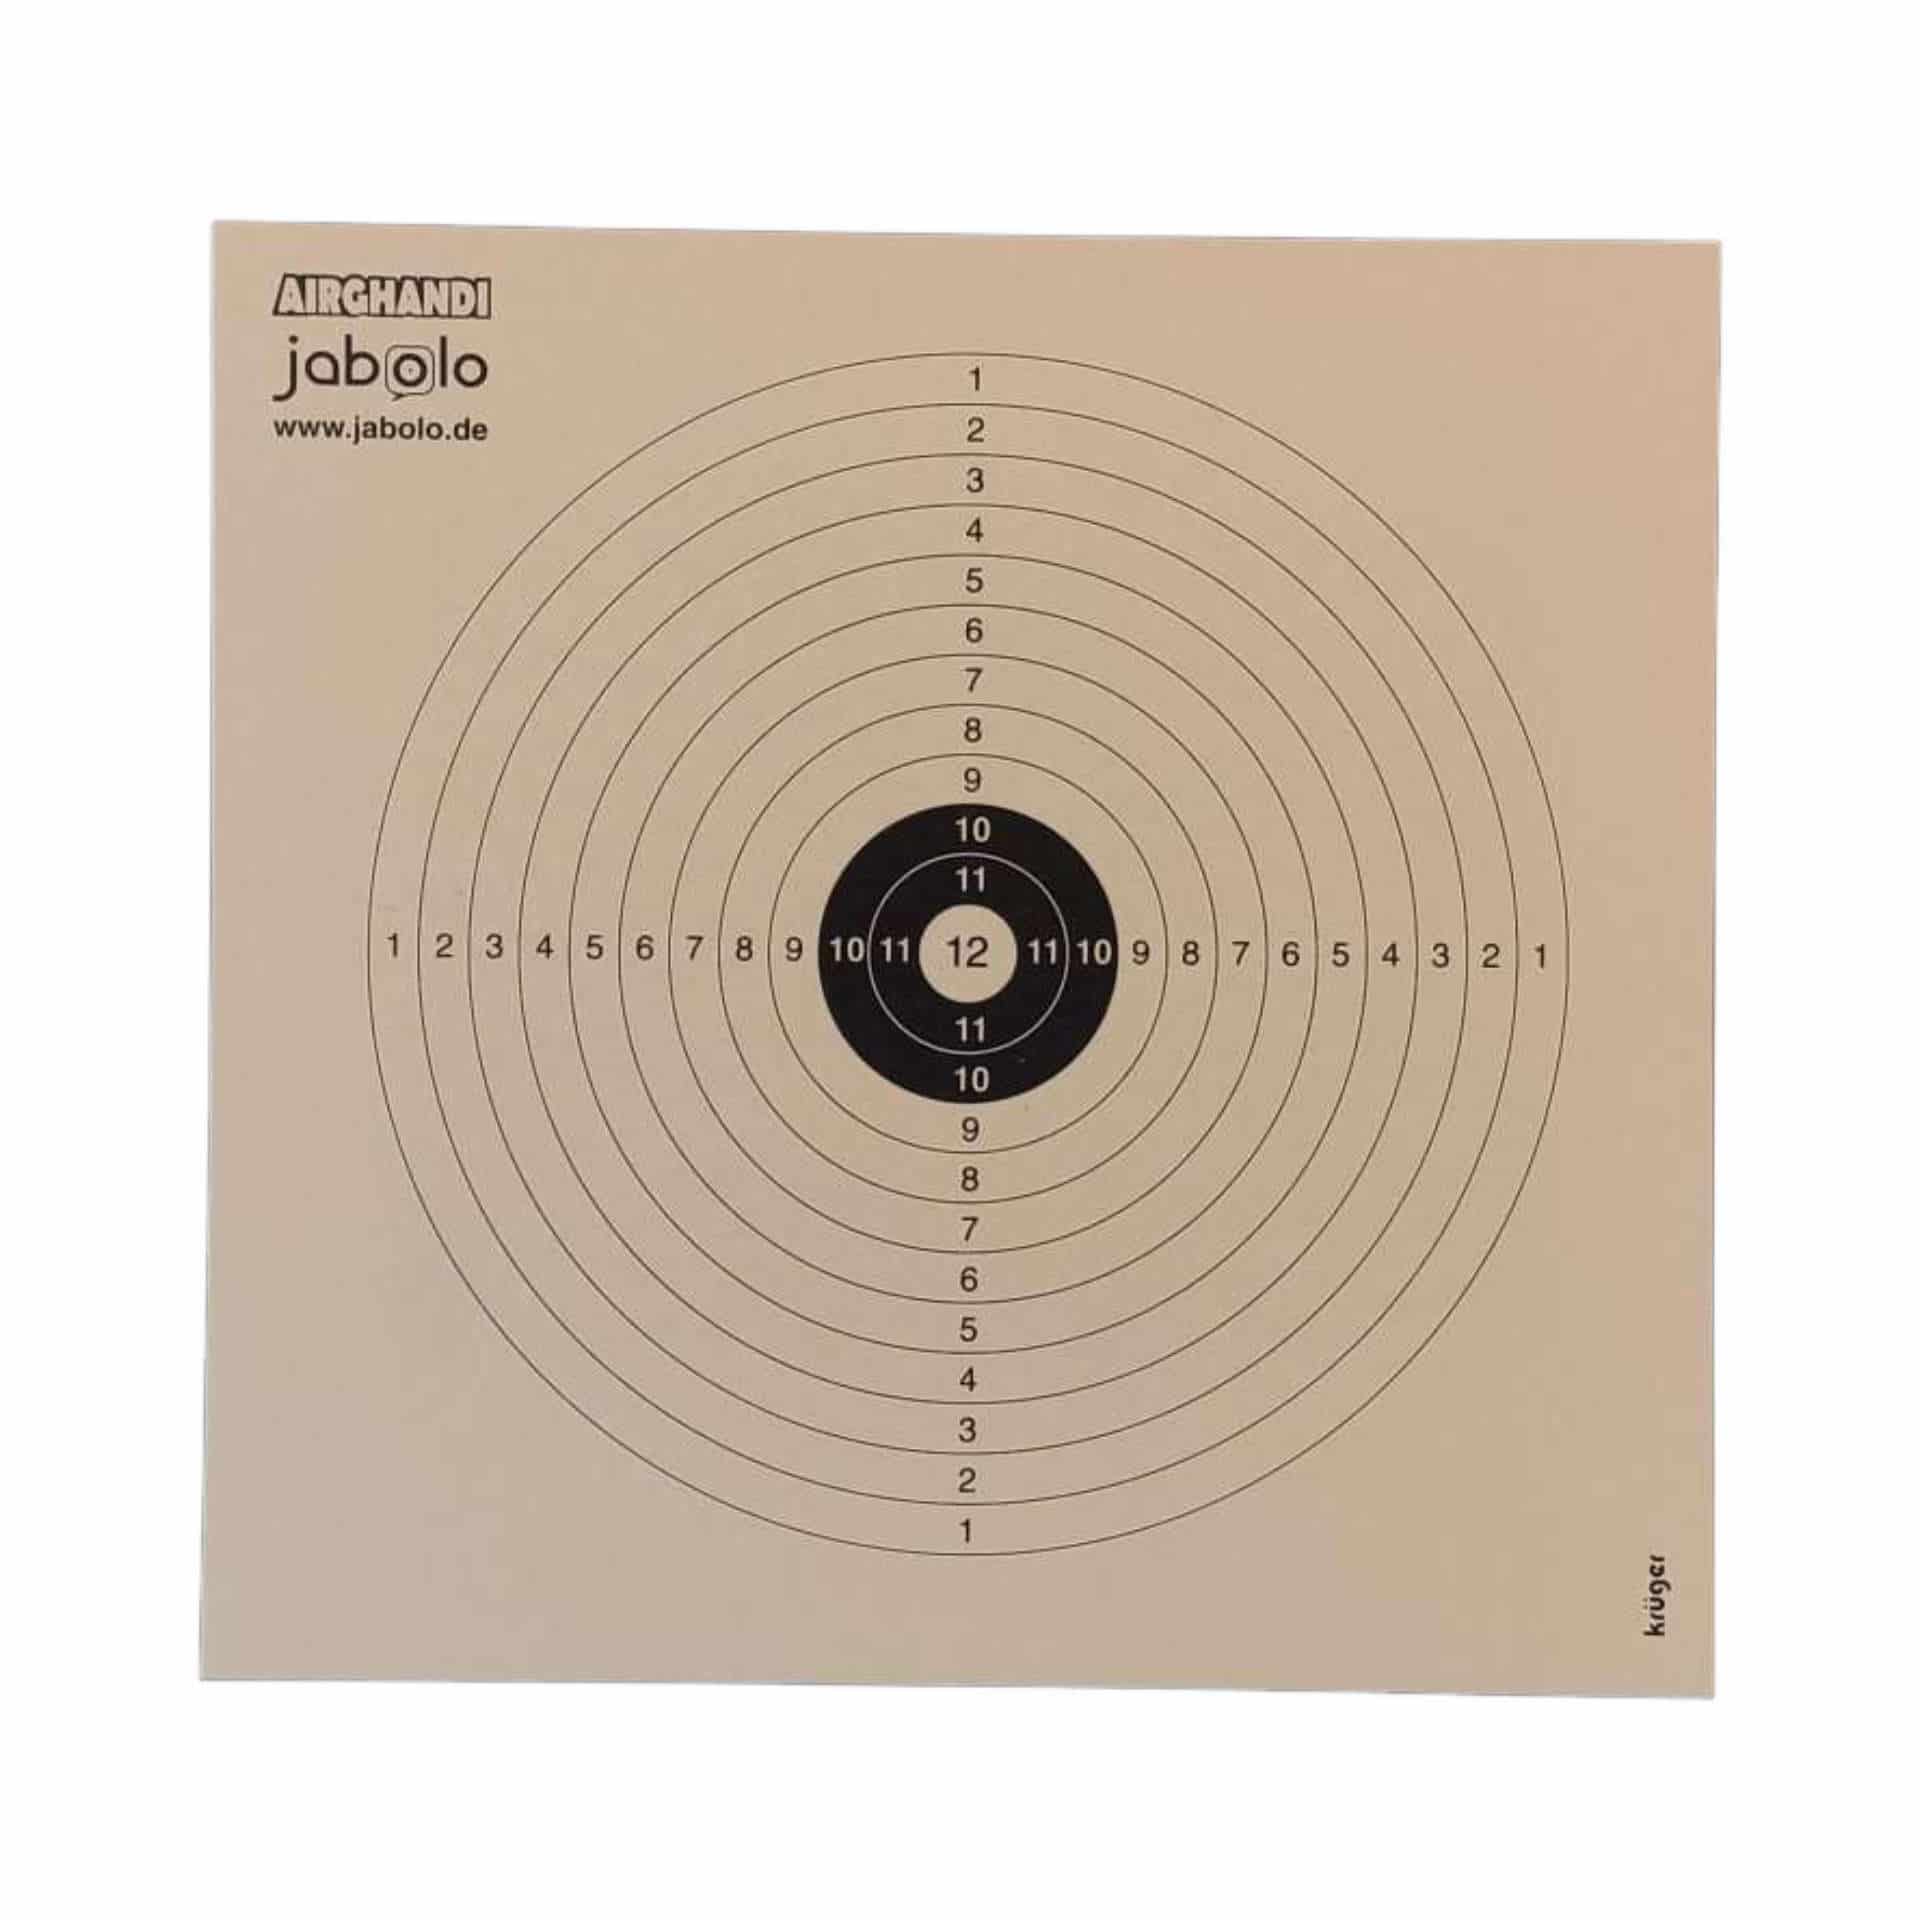 Target discs 14 x 14 Jabolo & AirGhandi (100 pieces)